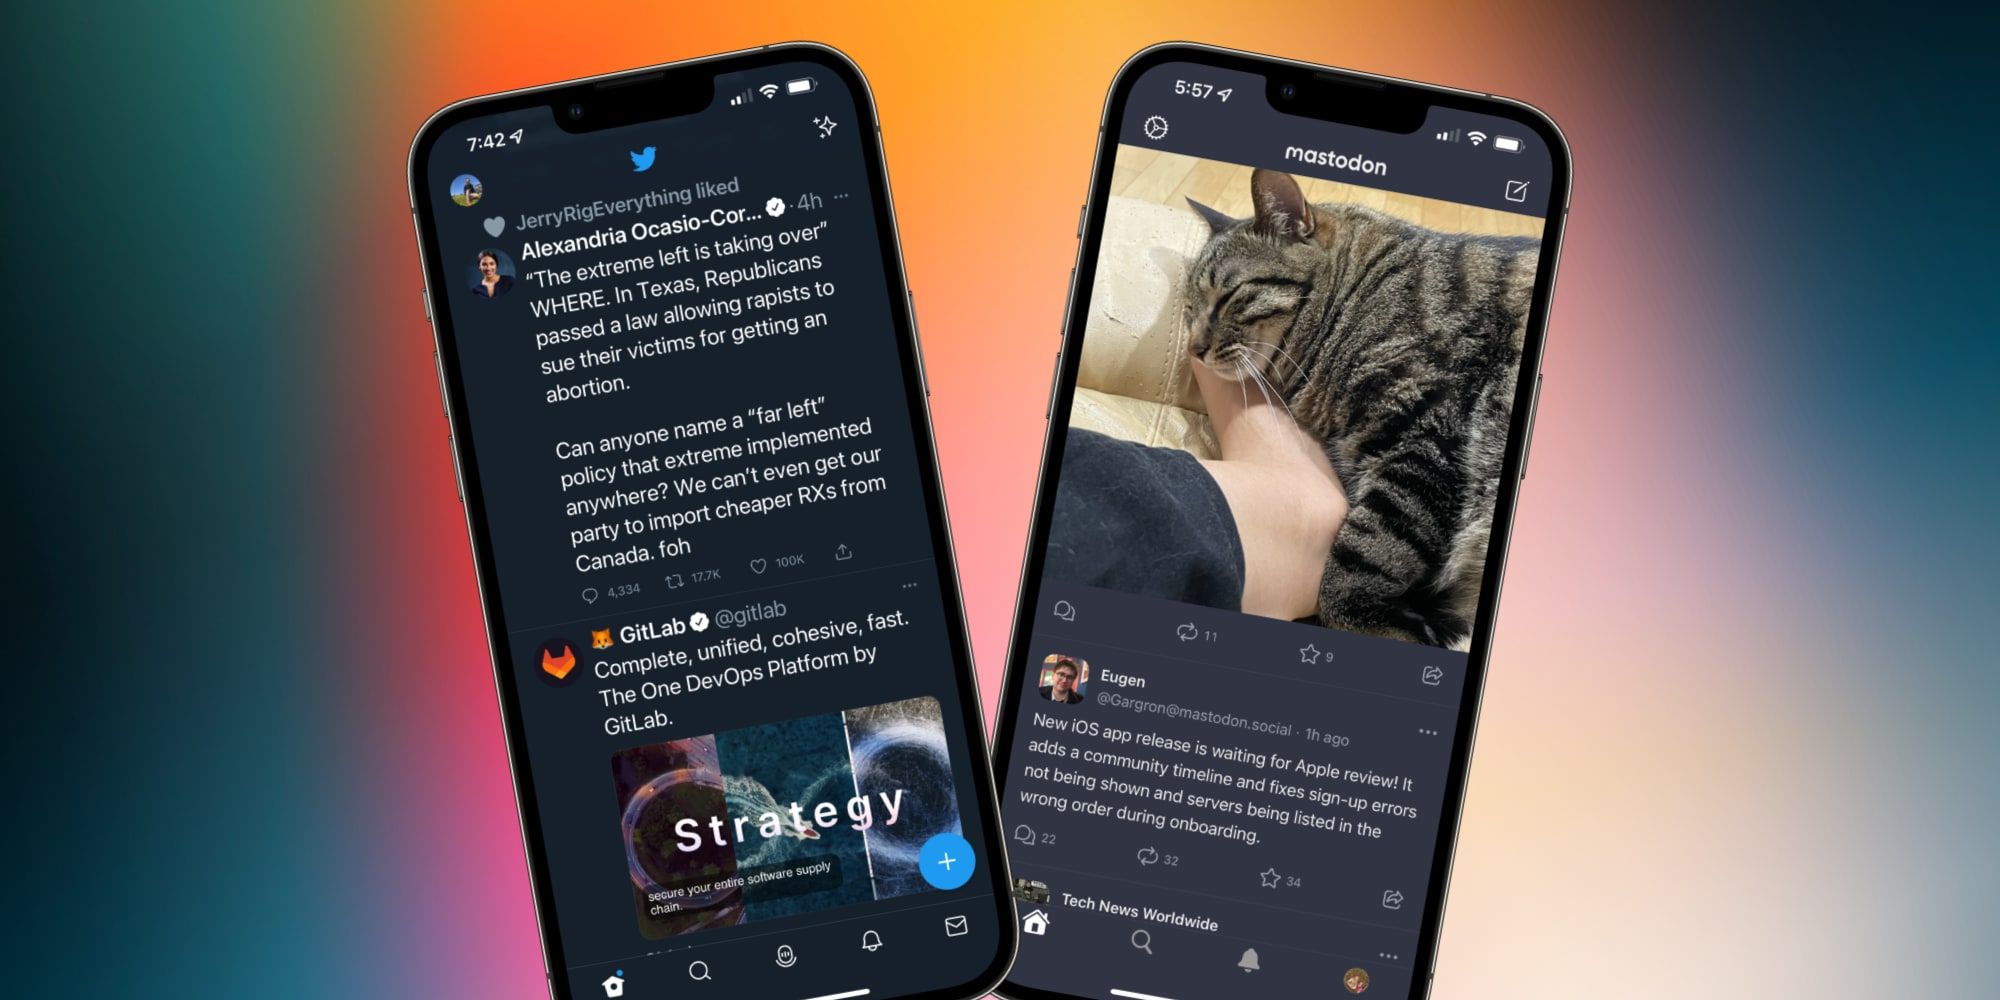 Twitter Mastodon Apps Side By Side On iPhone